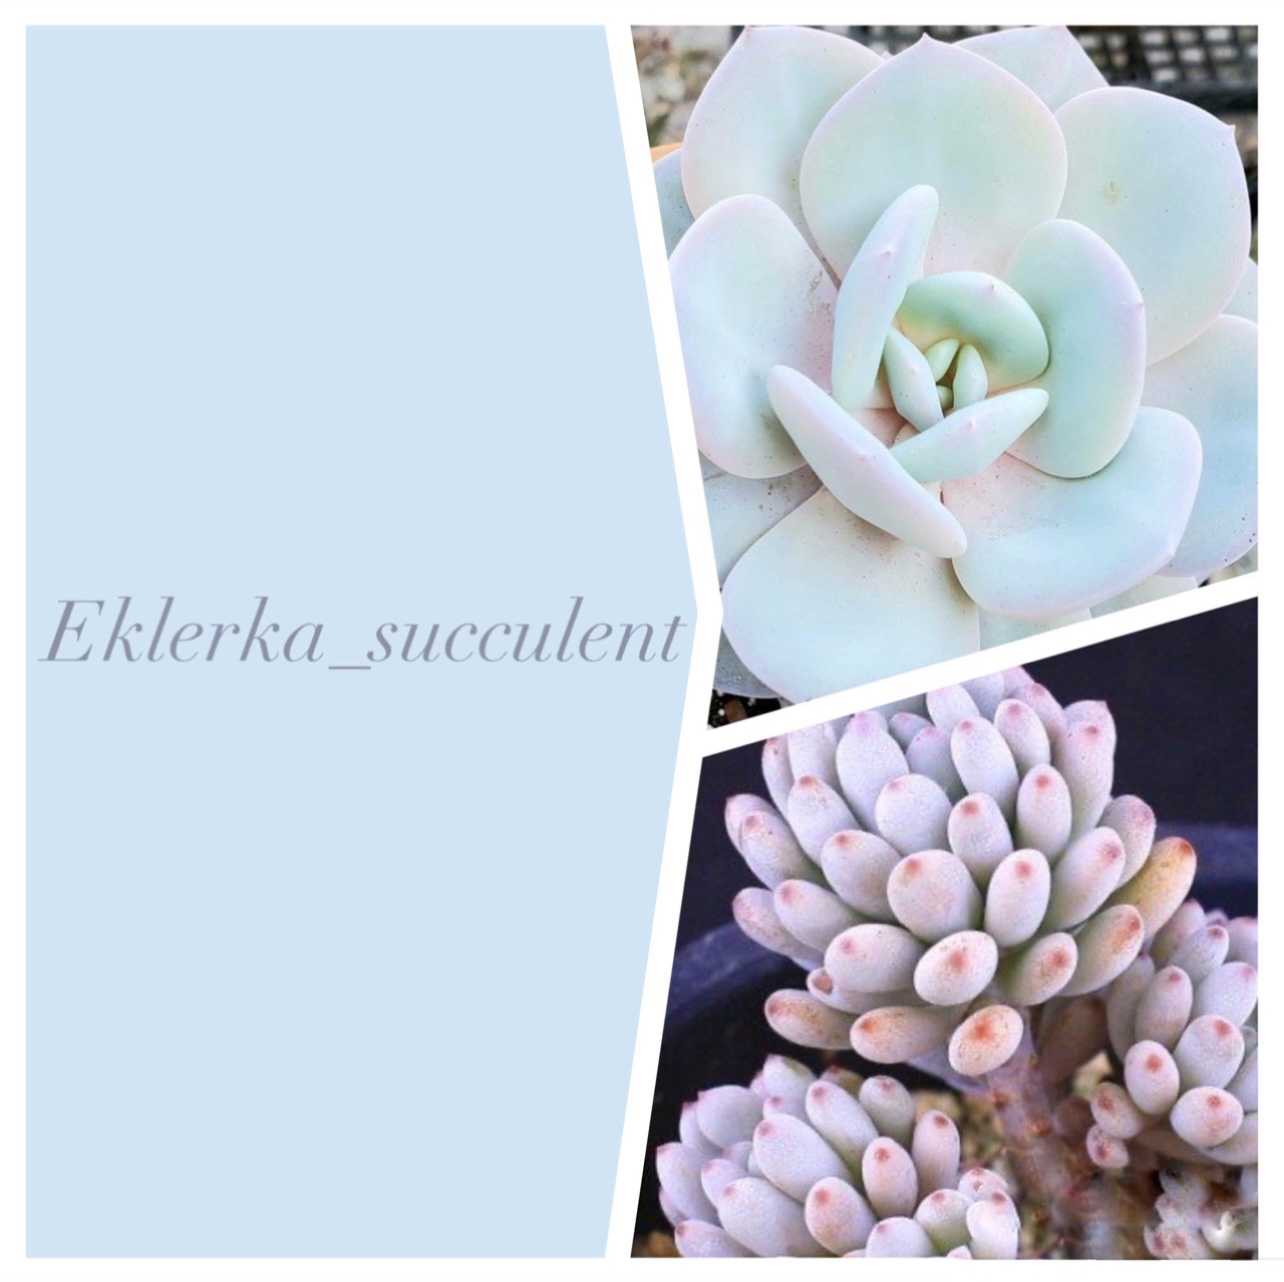 Eklerka_succulent